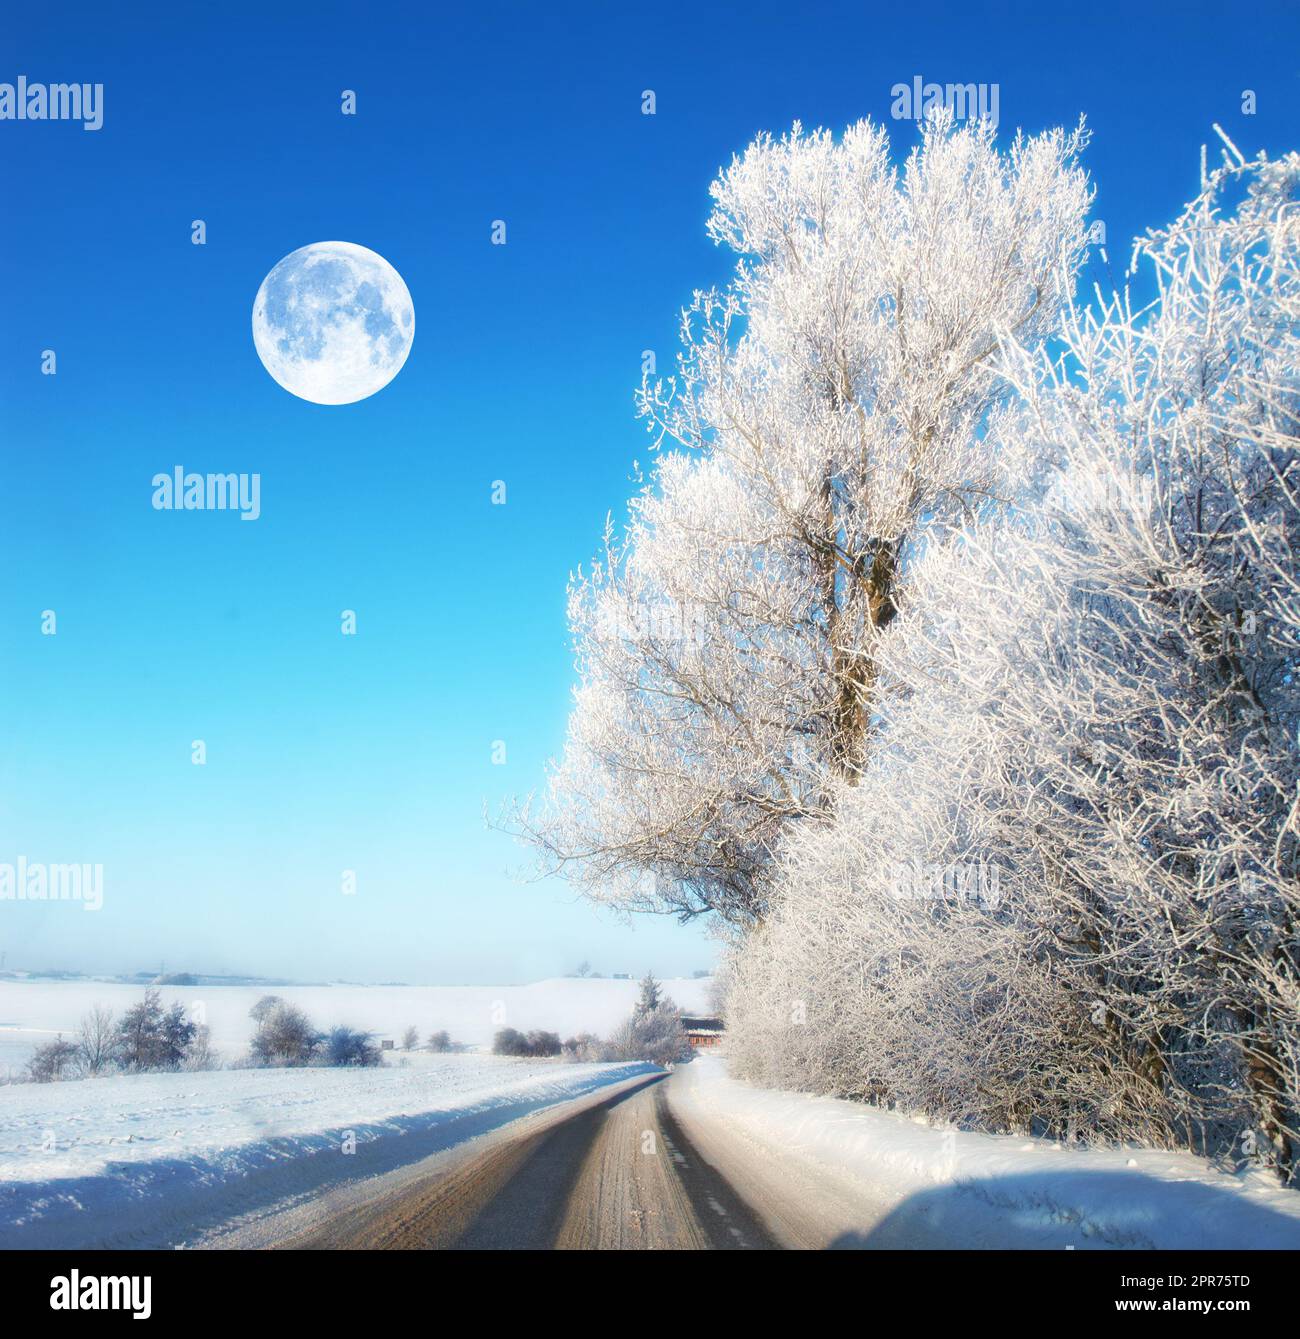 La lune en paysage d'hiver. Route avec glace sur un paysage d'hiver pendant midi. La Lune brille à travers des nuages clairs Banque D'Images